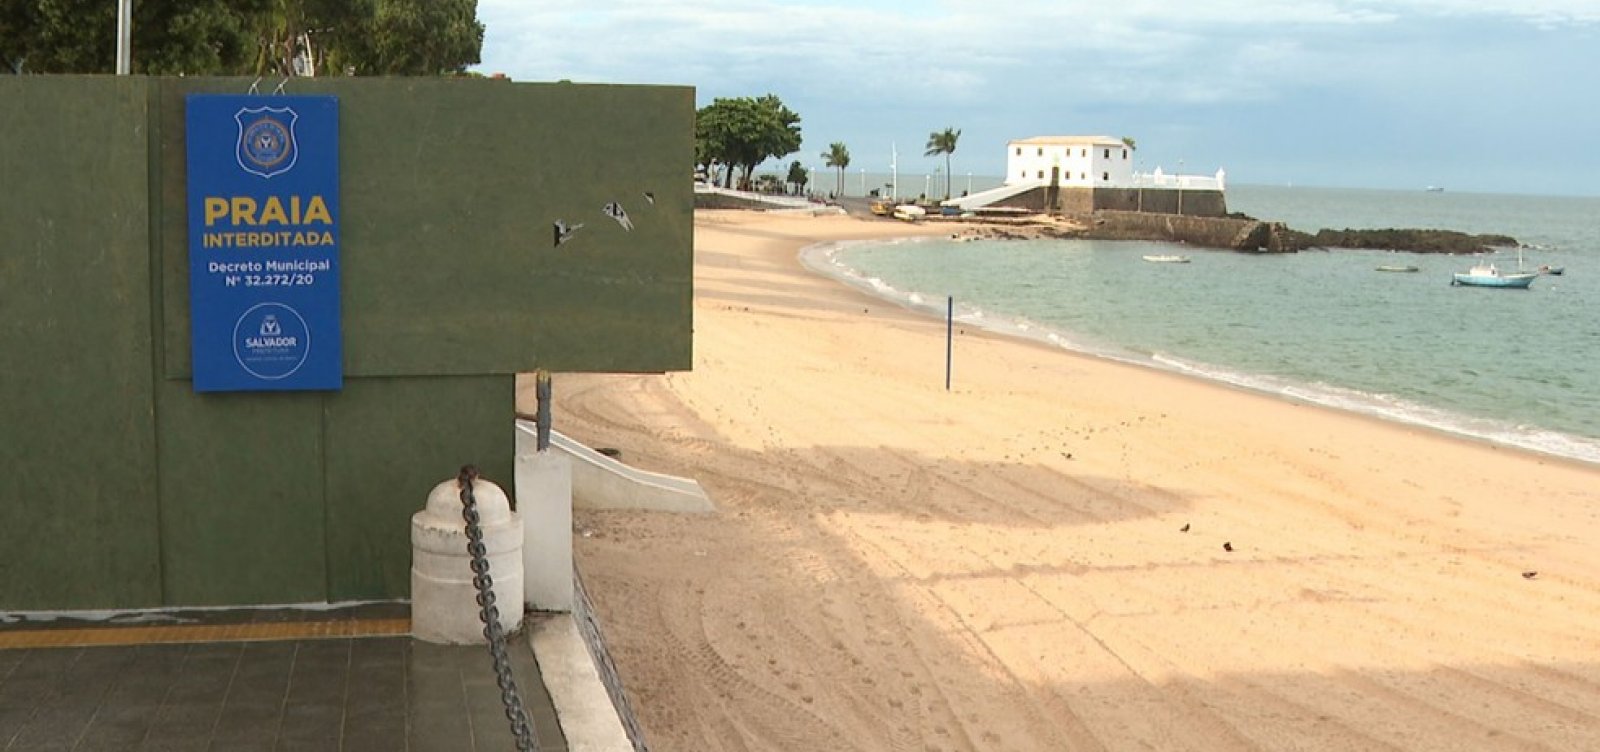 Após aglomerações neste domingo, ACM Neto anuncia nova interdição de praias